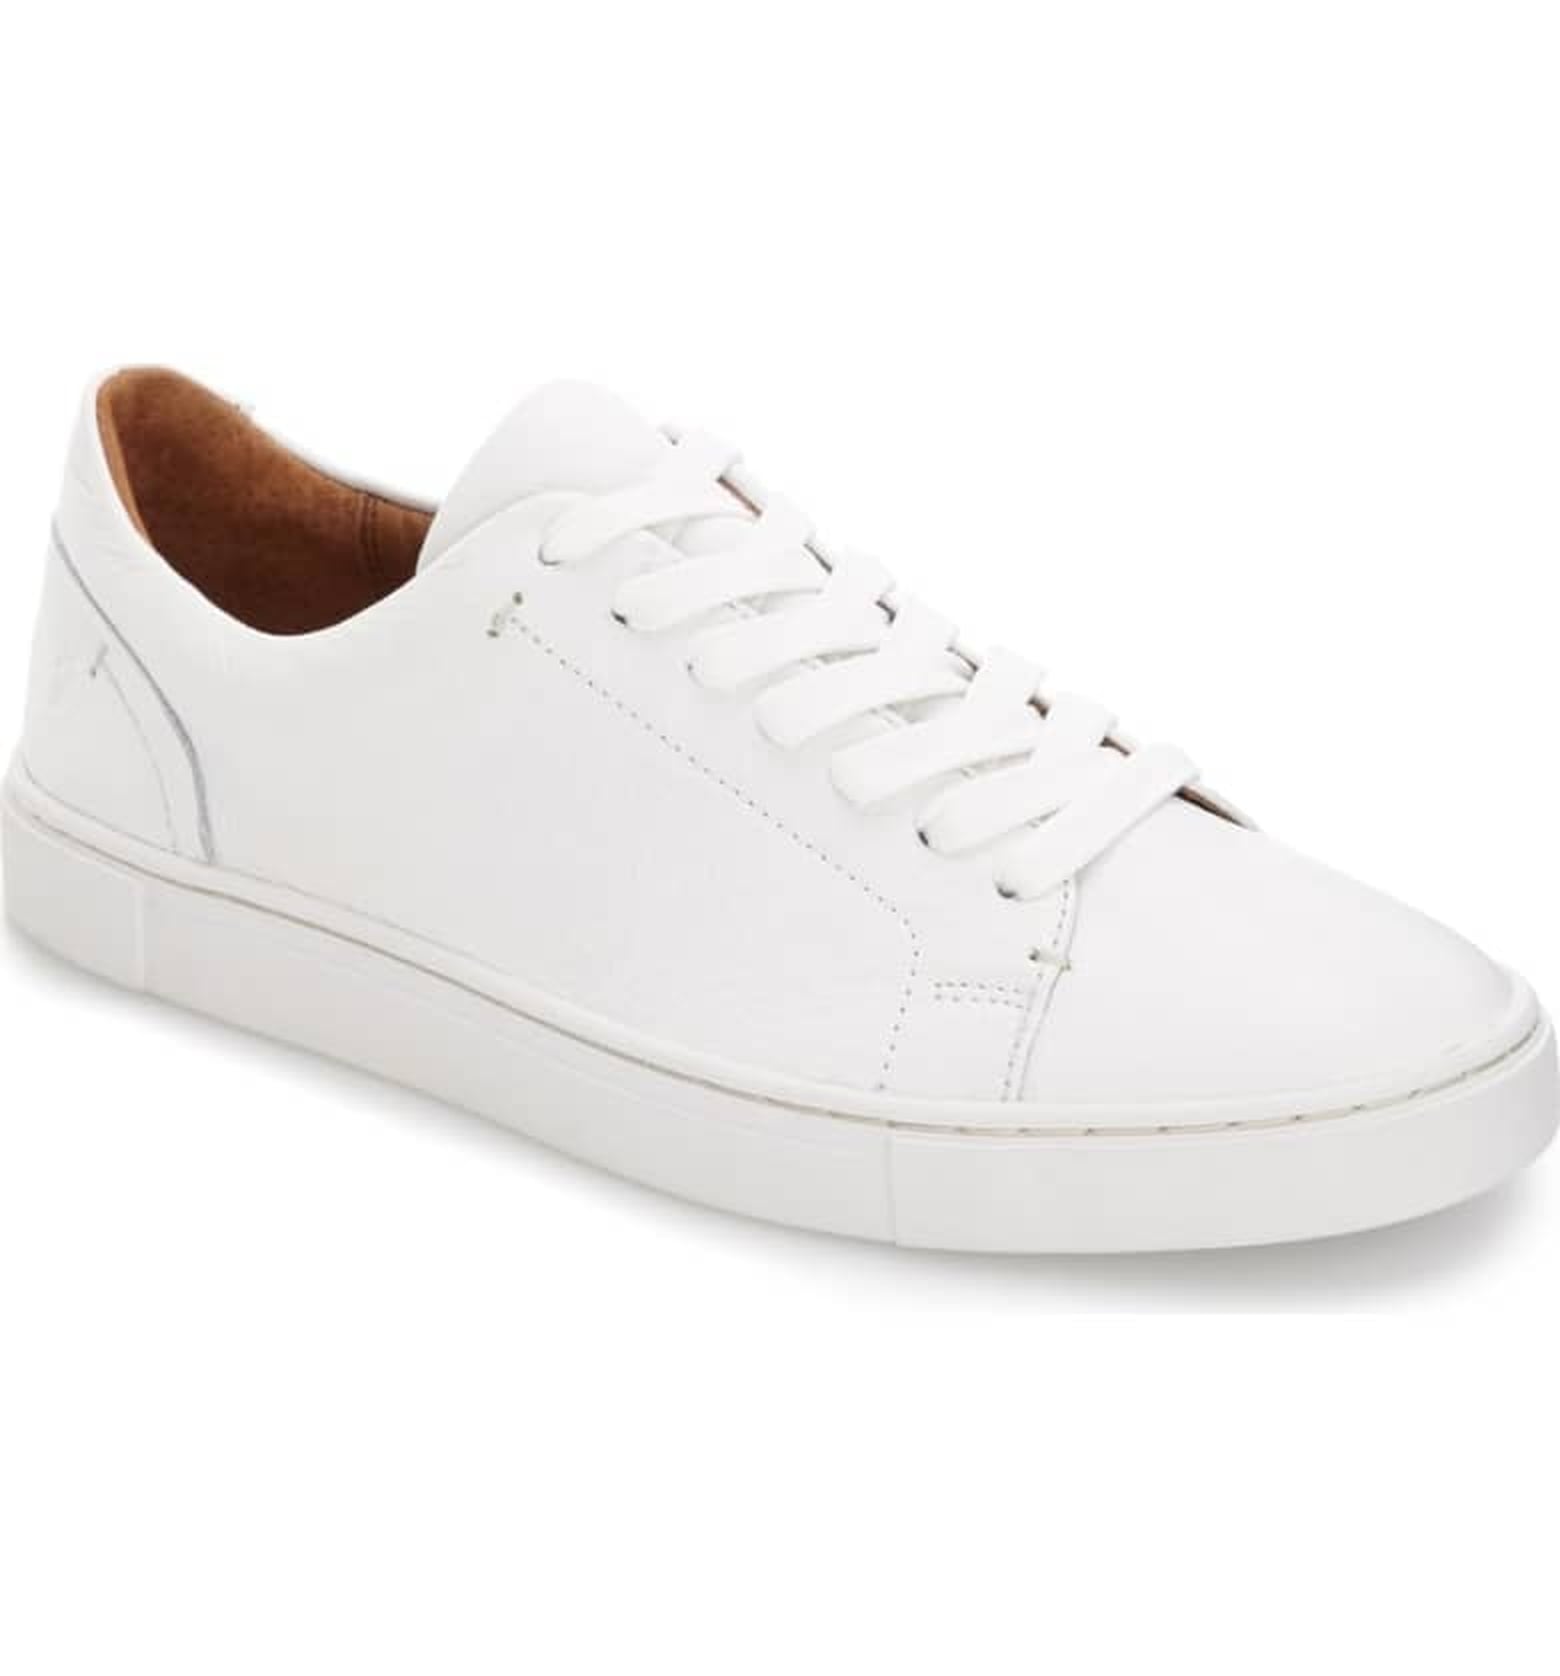 Meghan Markle White Sneakers April 2019 | POPSUGAR Fashion